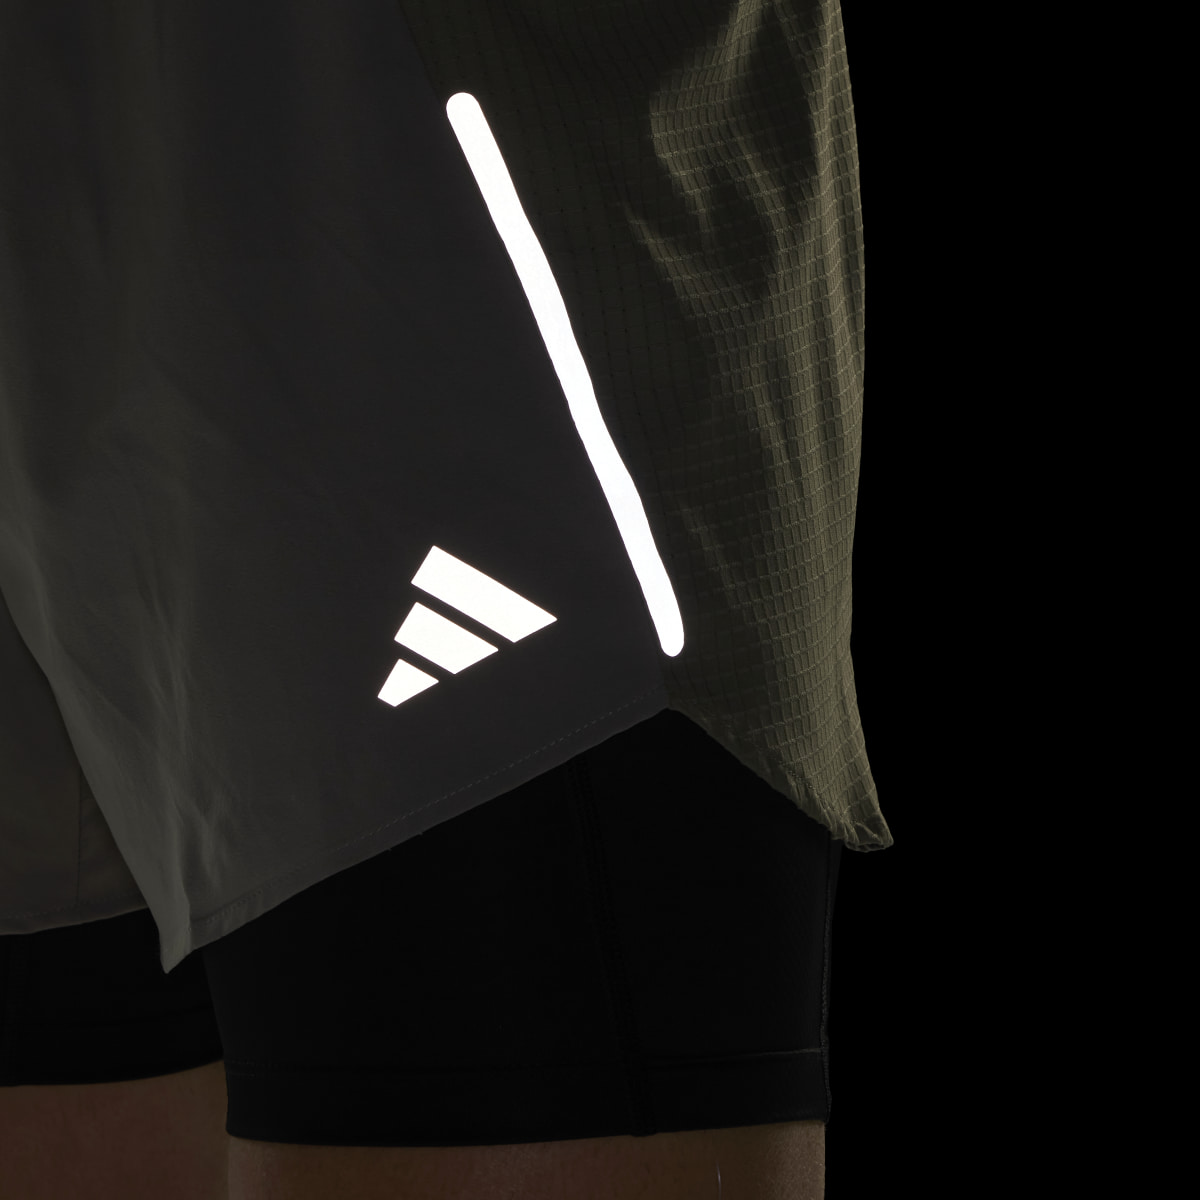 Adidas Shorts Designed 4 Running 2-en-1. 7